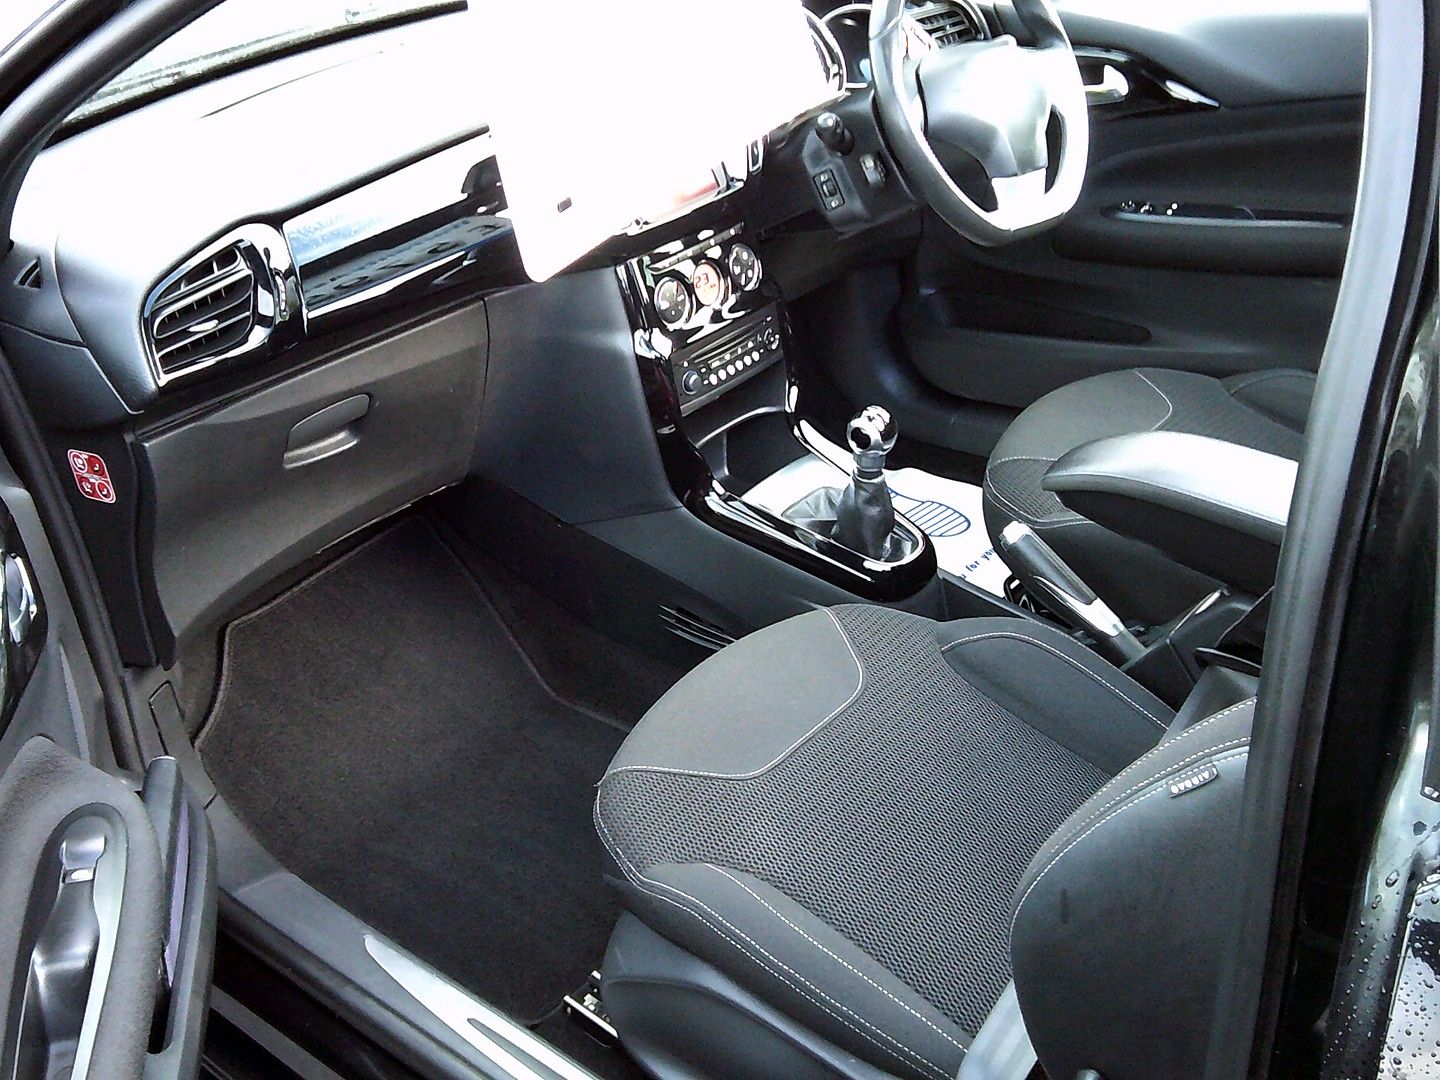 CITROEN DS3 Cabrio VTi 120 DStyle (2013) - Picture 26